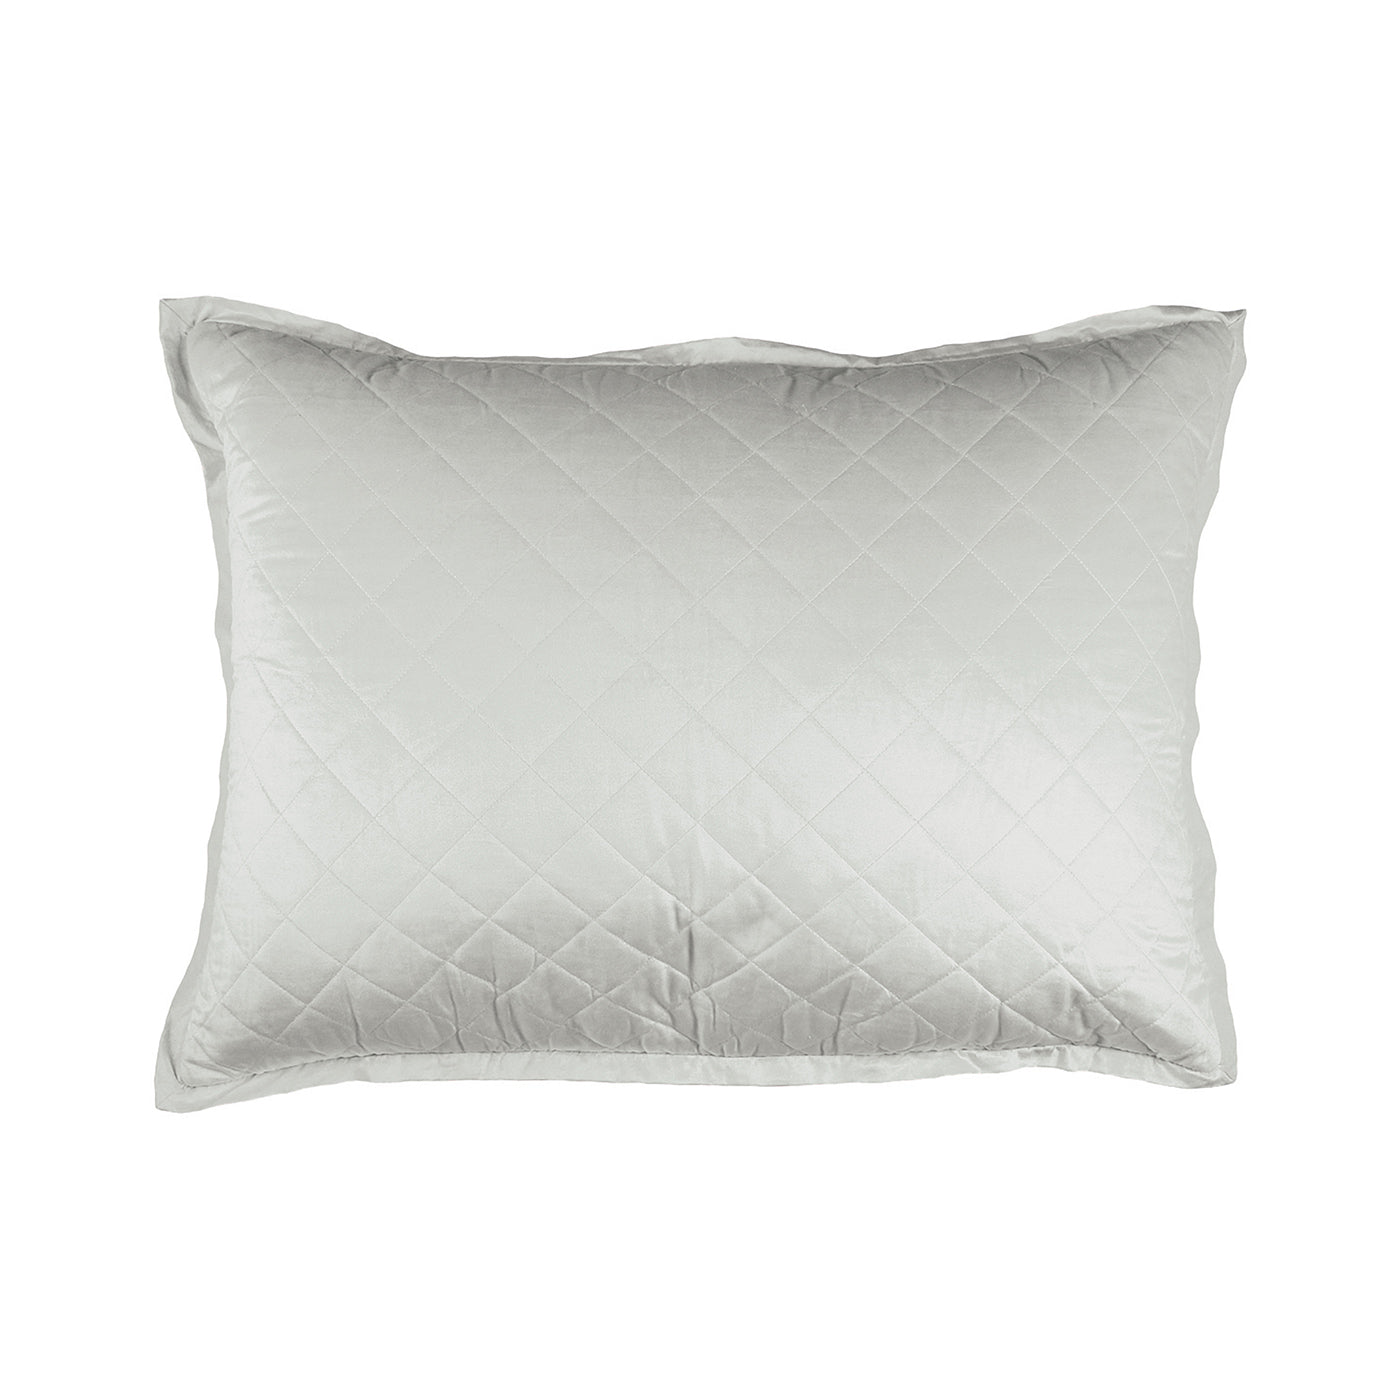 Chloe Luxe Euro Pillow Celadon Velvet 27X36 (Insert Included)